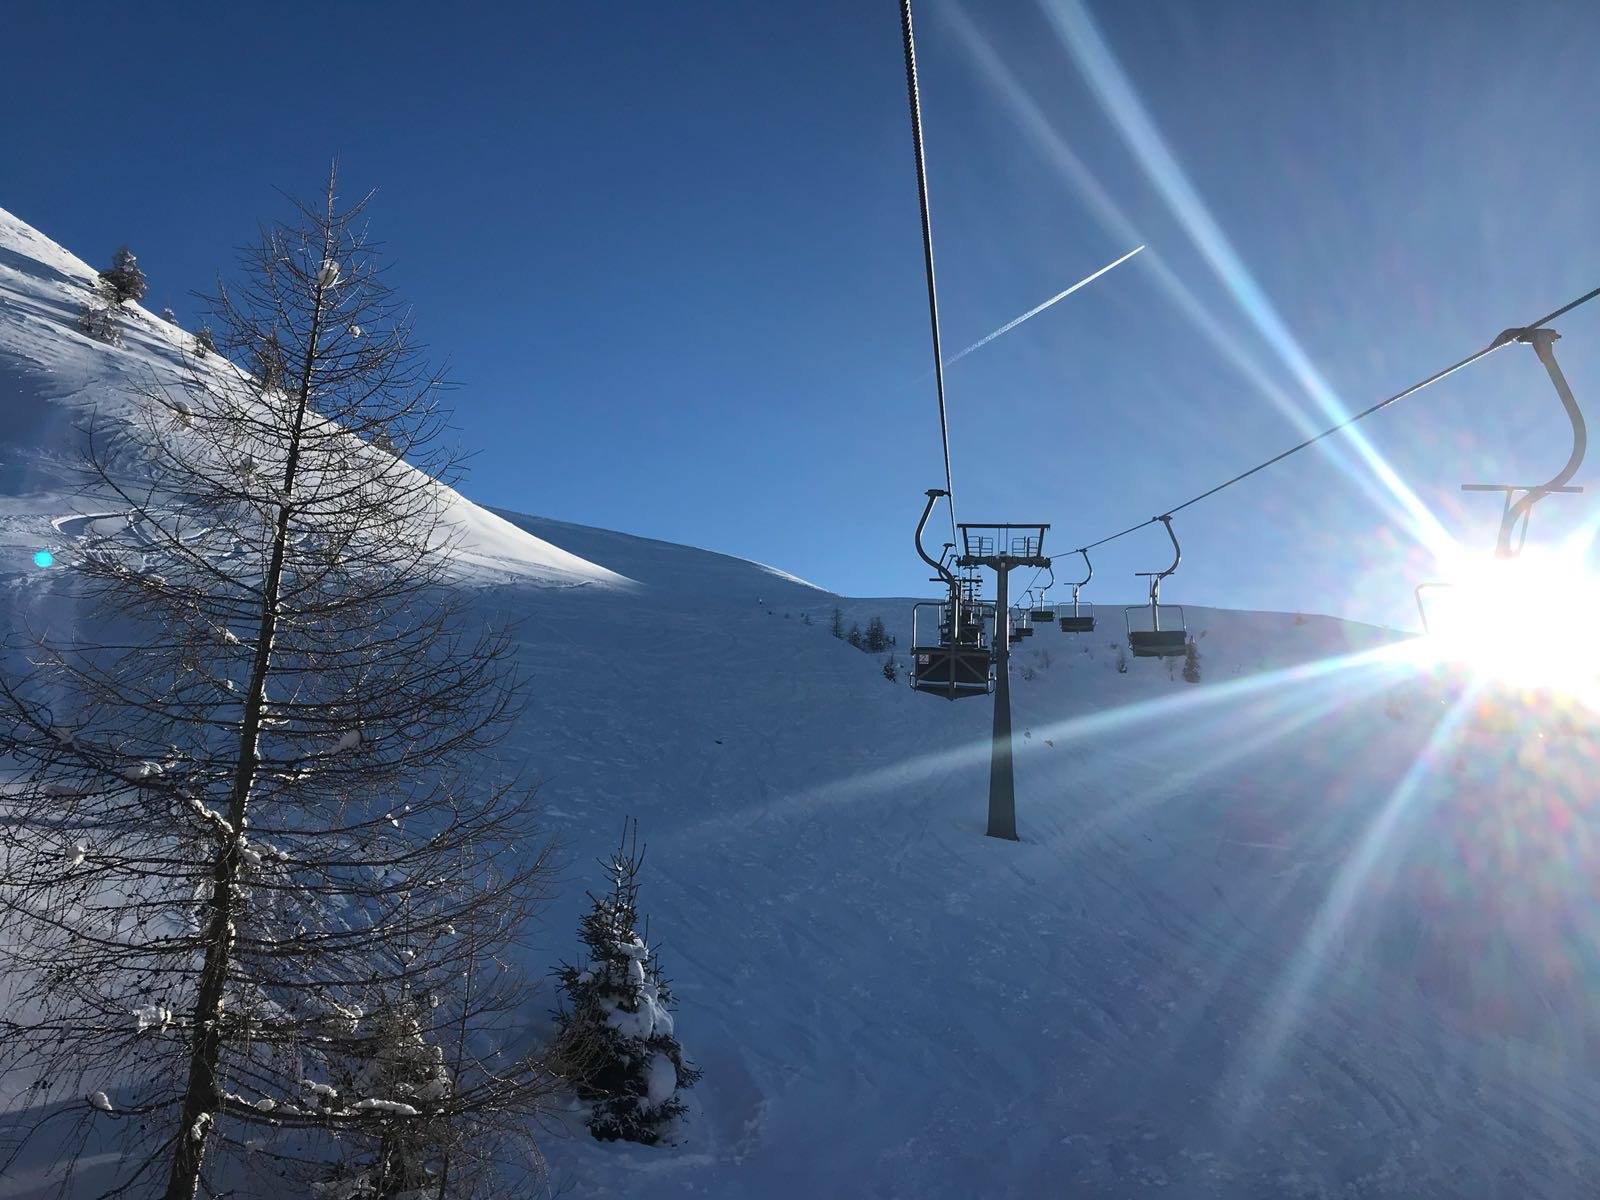 Montecampione Ski Area - Avviso importante riguardante l’apertura stagionale